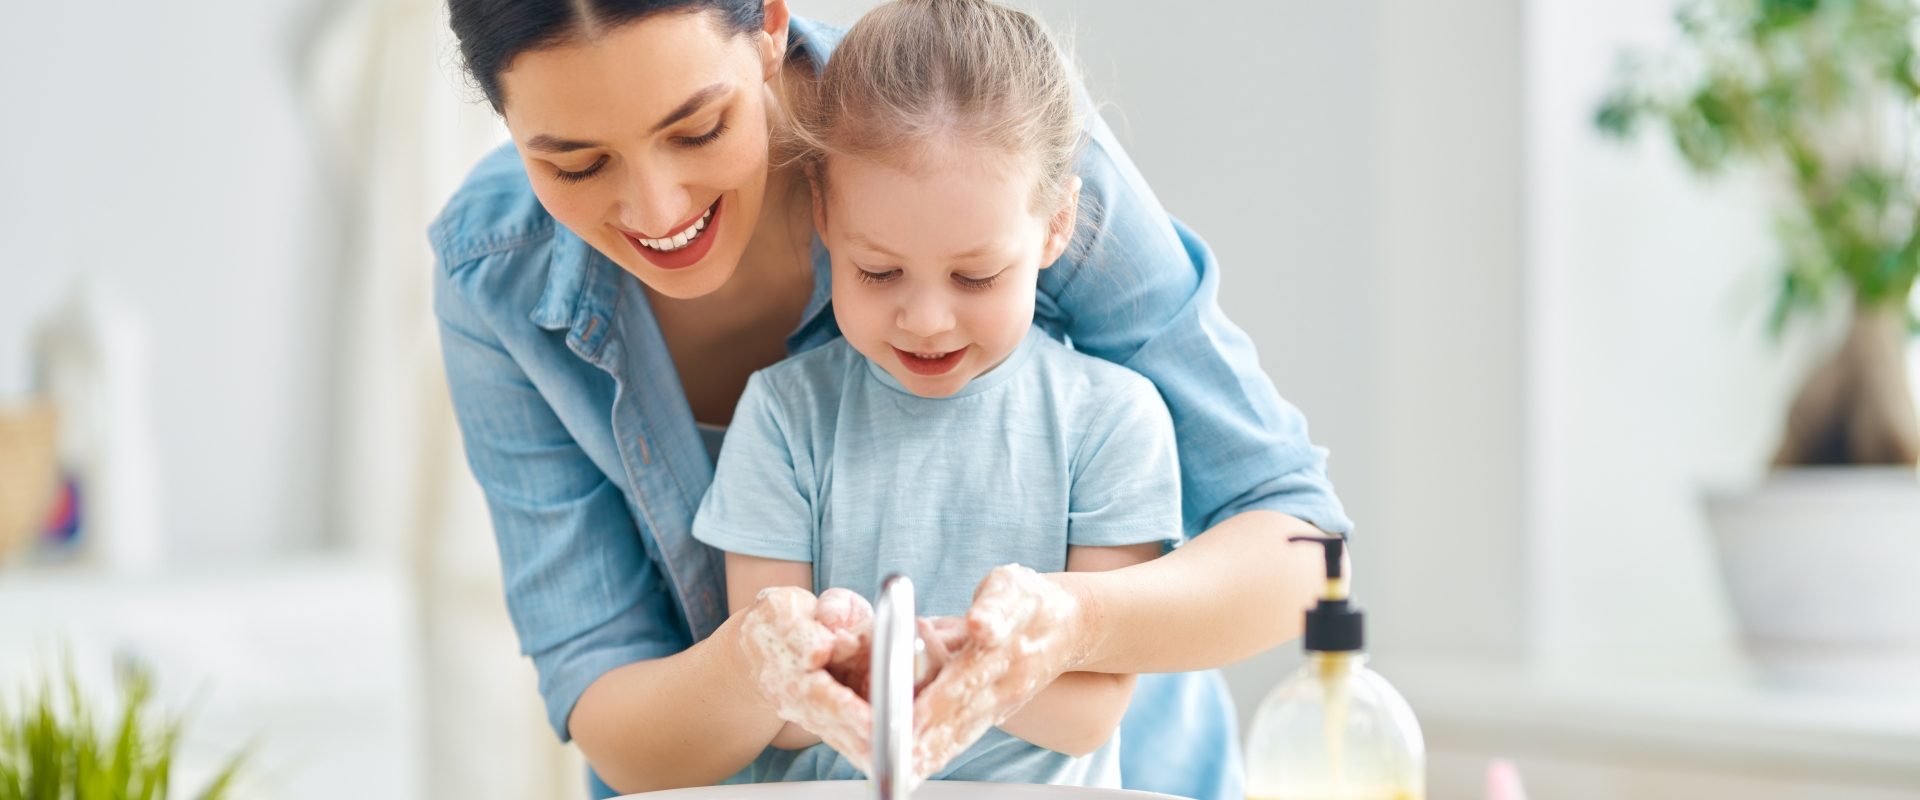 Aby zapobiec rozprzestrzenianiu się koronawirusa trzeba często myć ręce. Jak zadbać o przesuszone dłonie? Jakie są najlepsze domowe sposoby na suche dłonie? Mama uczy córkę jak myć ręce.